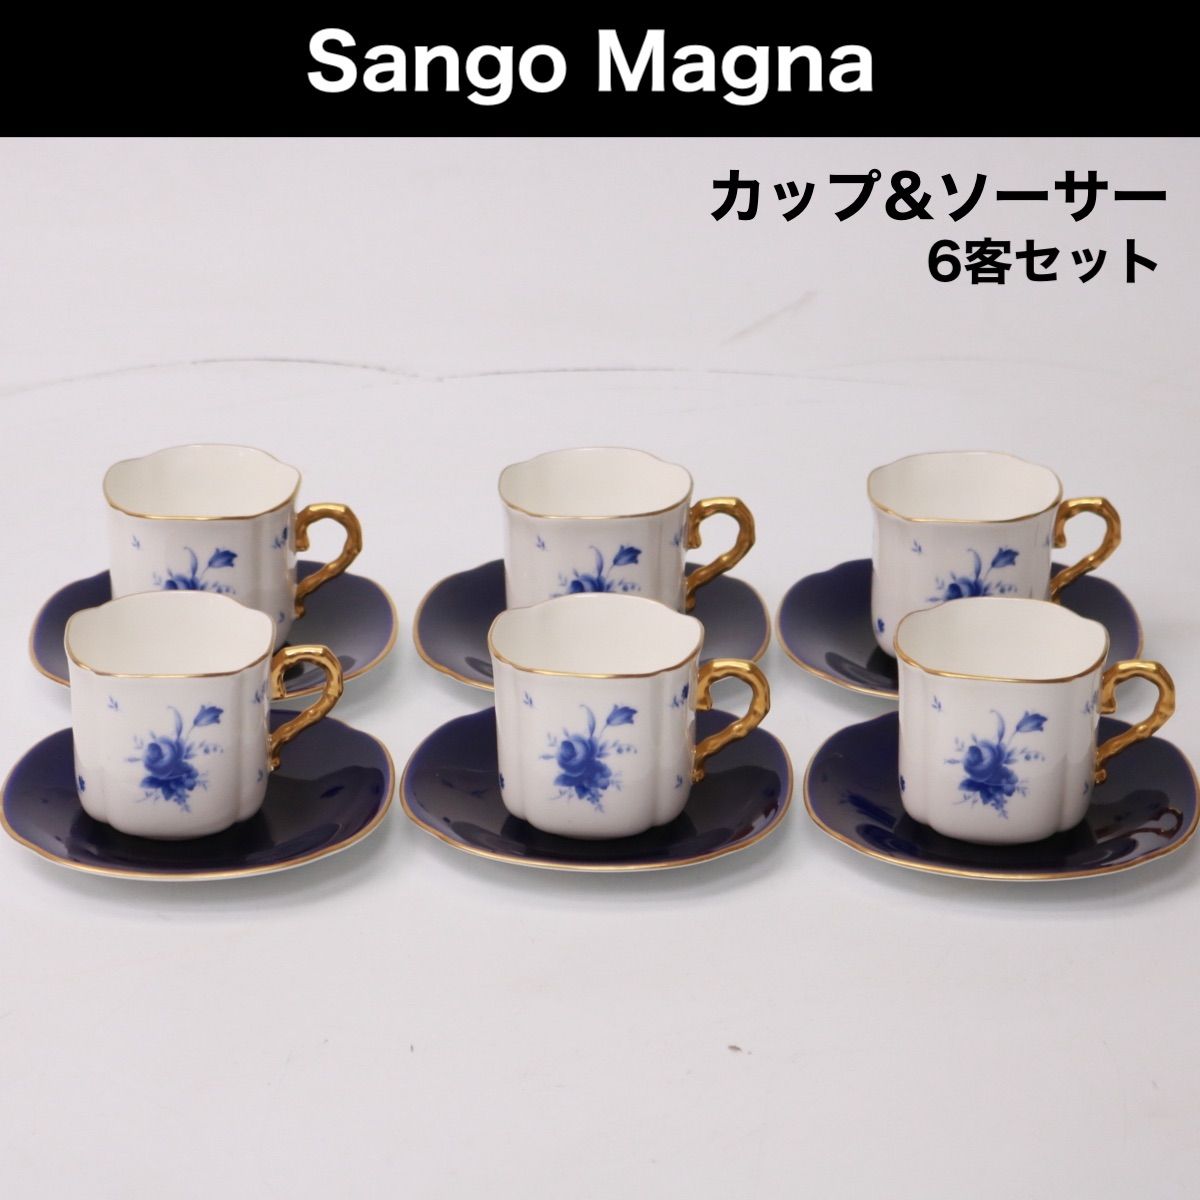 HG3270 Sango MAGNA 三郷陶器 ティーポット シュガーポット ピッチャー 